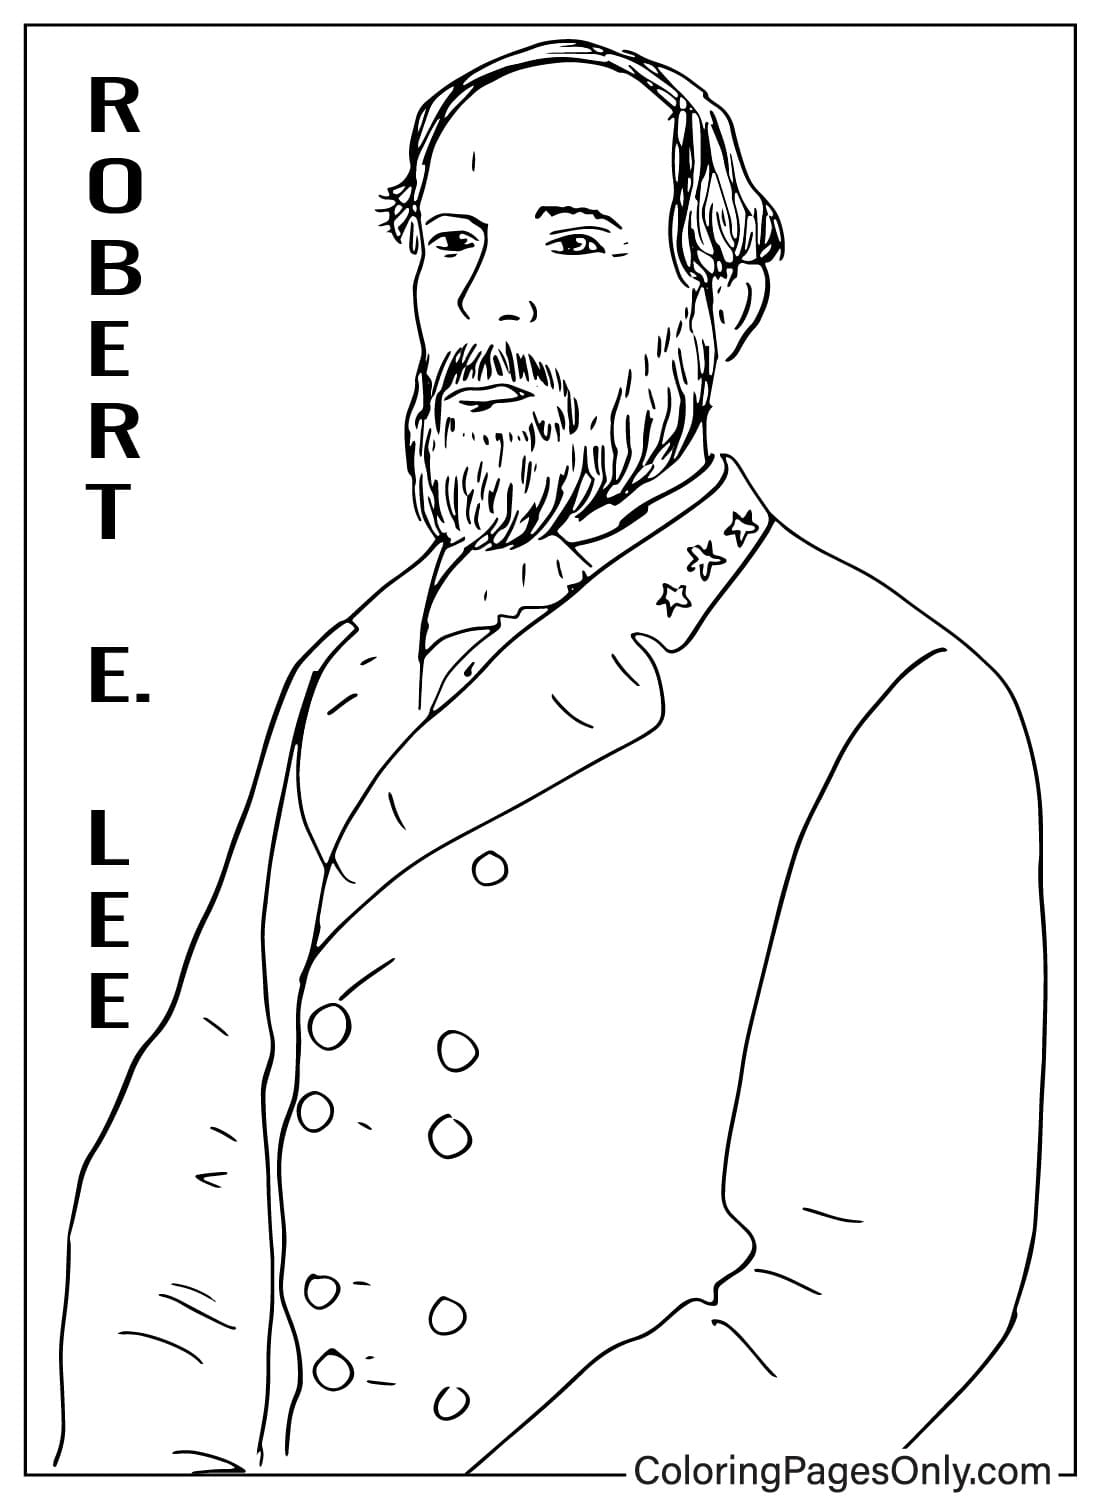 Robert E. Lee tekening kleurplaat van Robert E. Lee